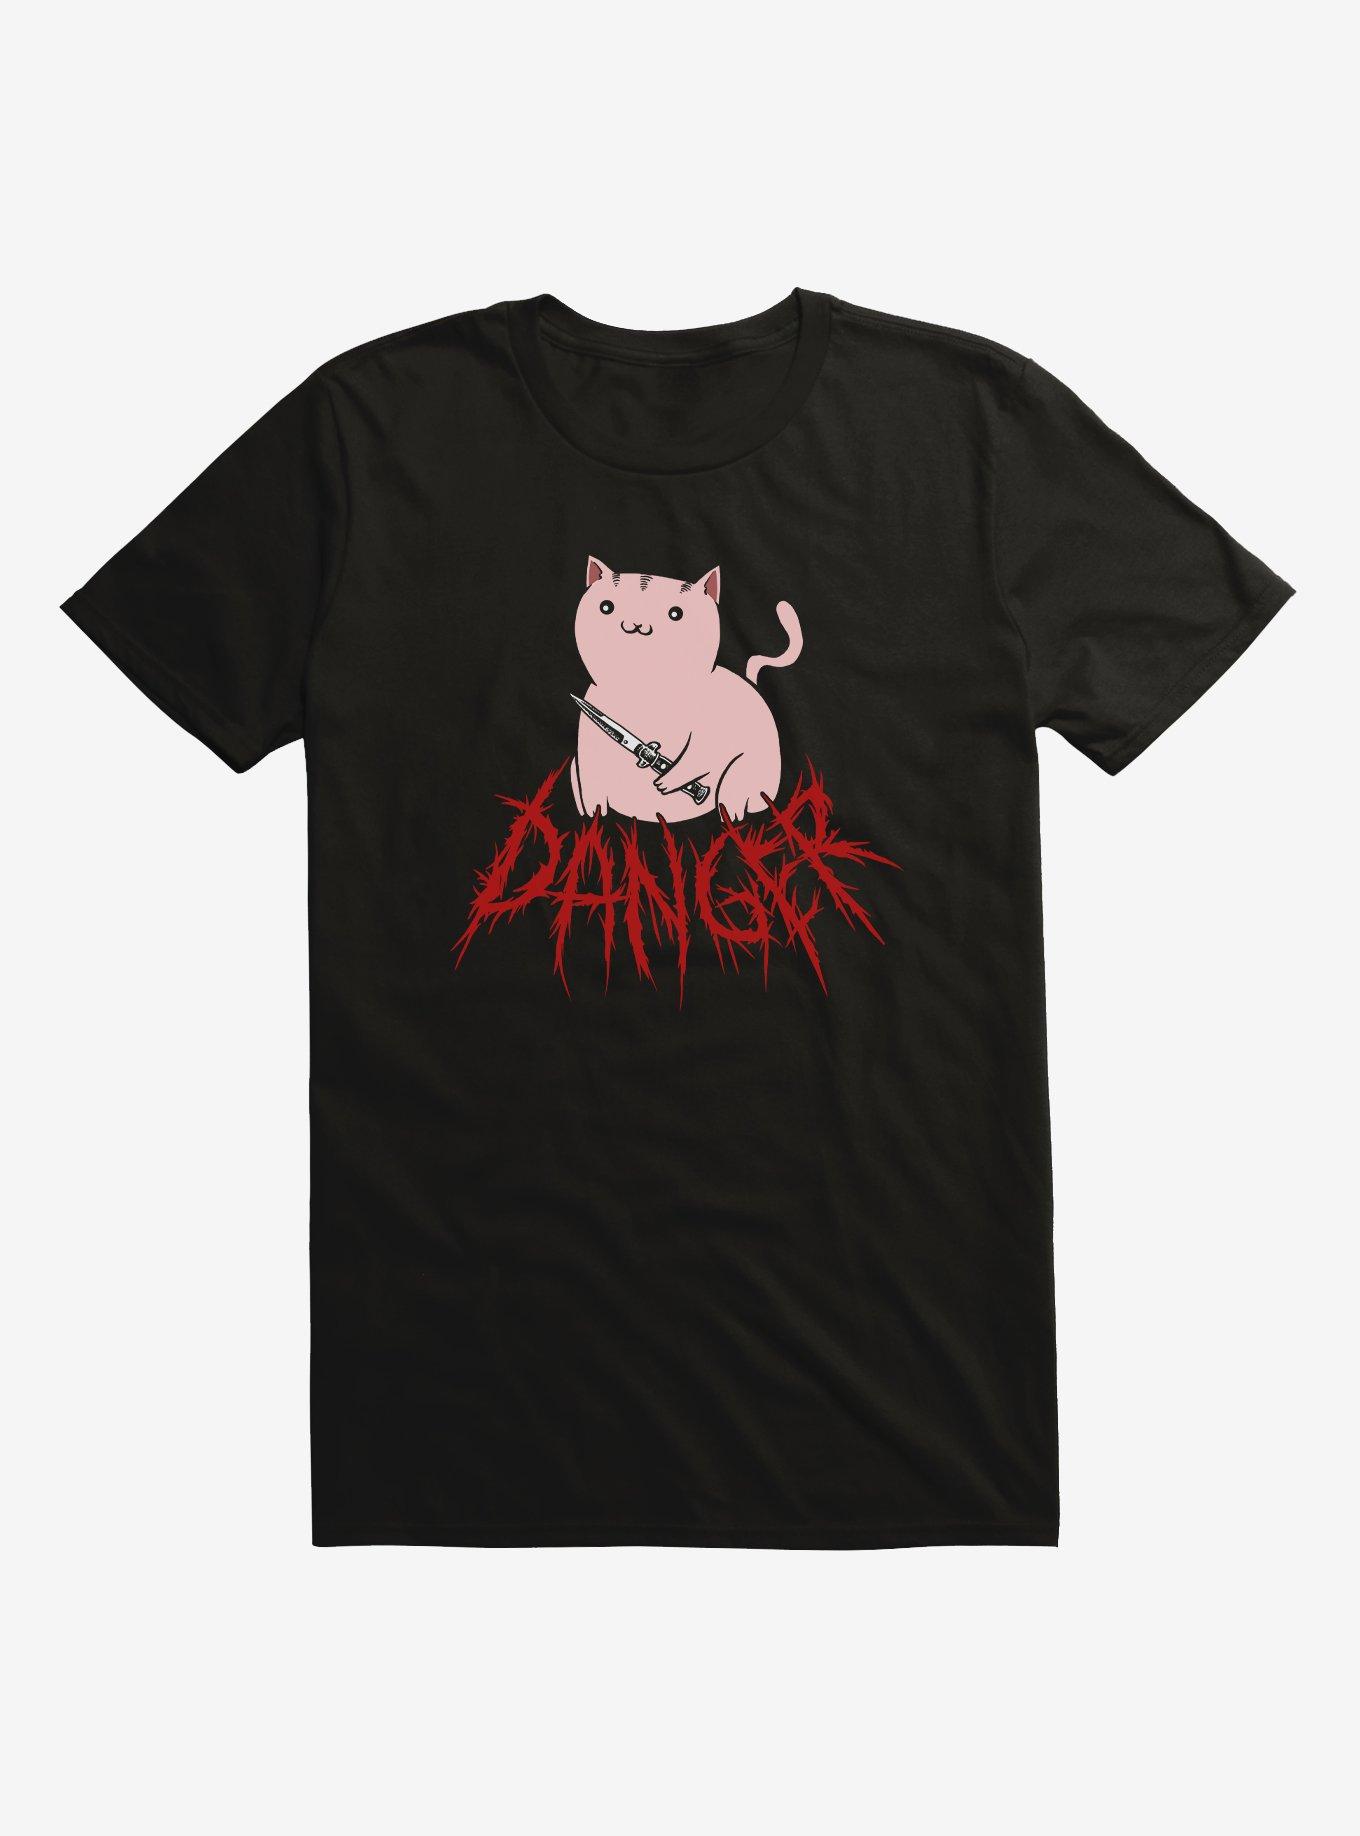 Danger Cat T-Shirt, BLACK, hi-res